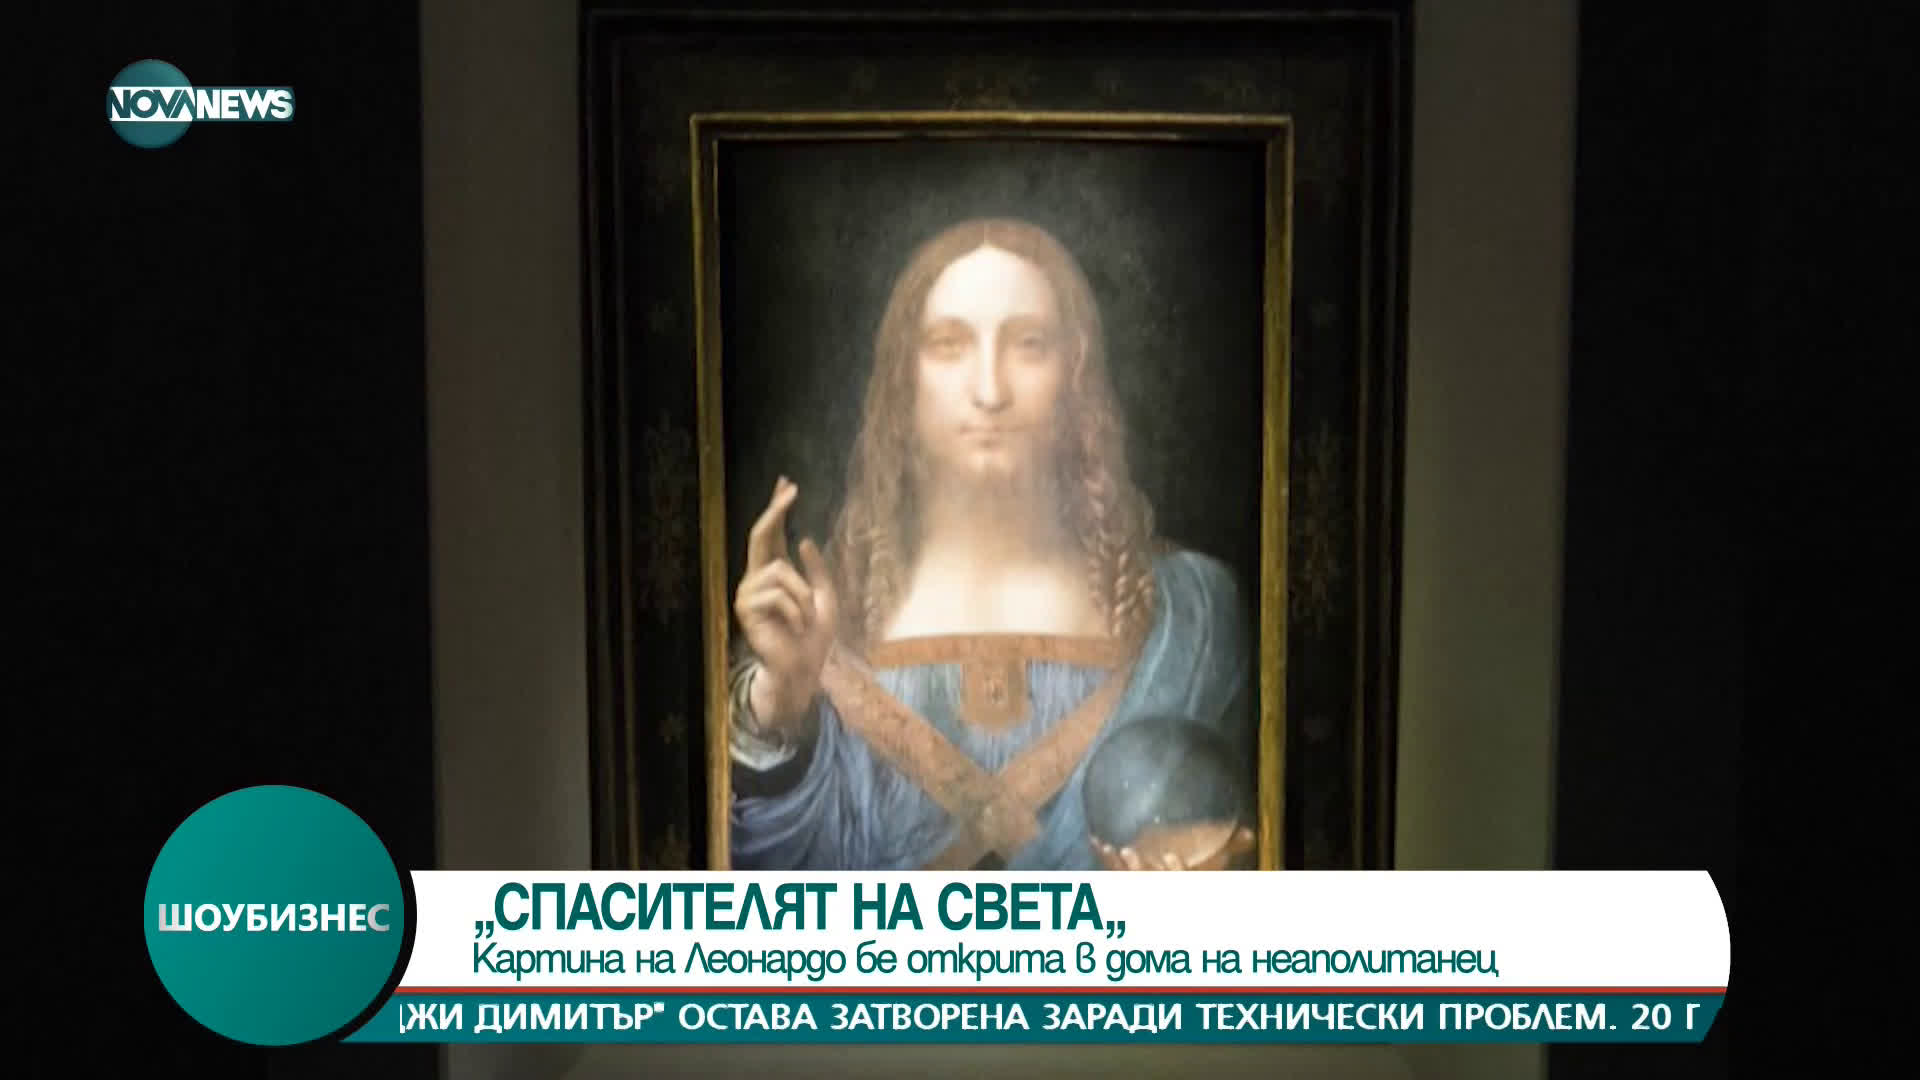 Картина на Леонардо бе открита в дома на неаполитанец